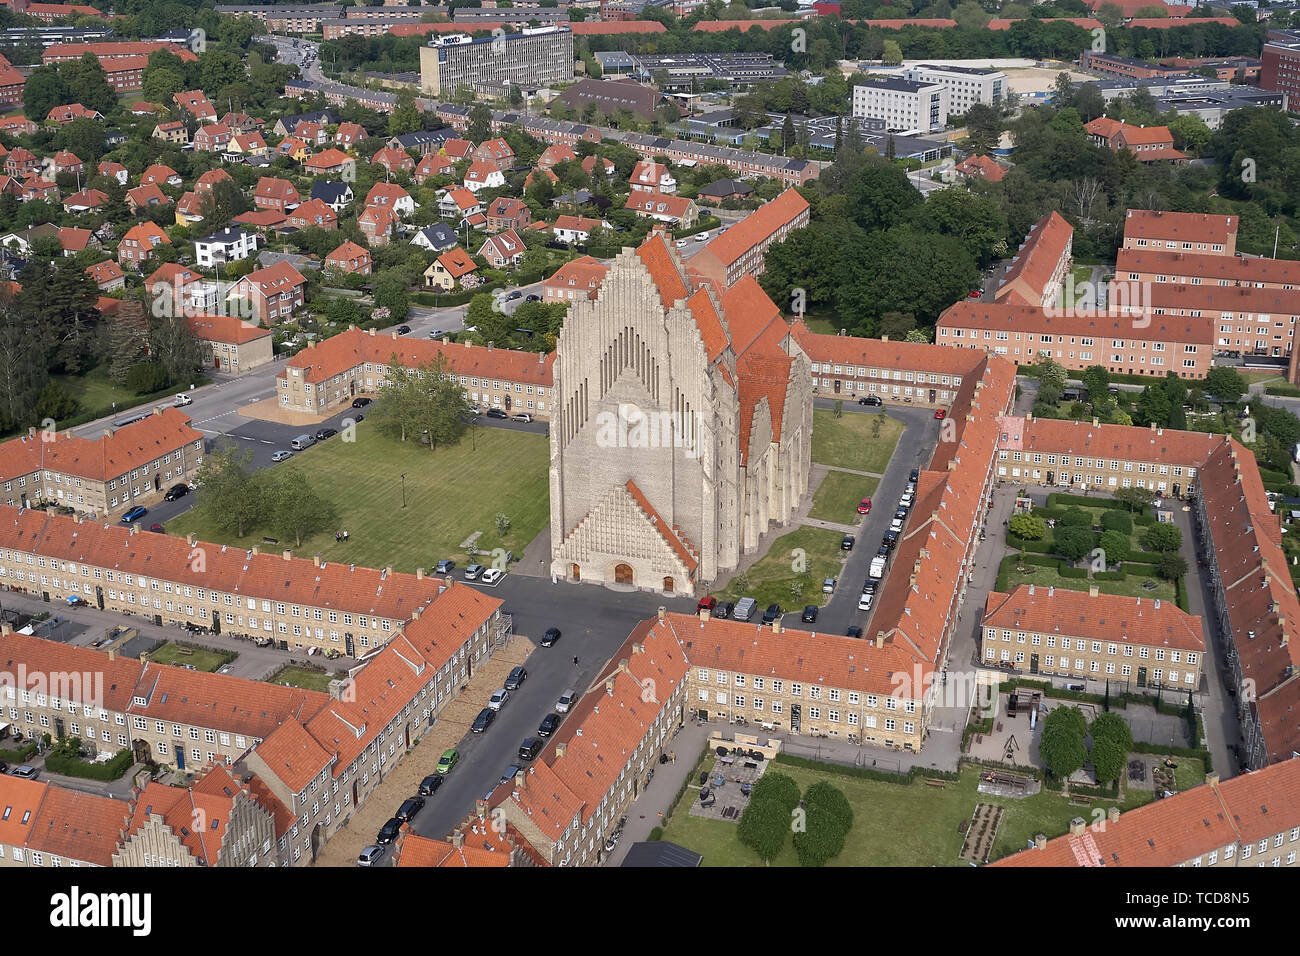 Grundtvigs iglesia ubicada en el distrito de Bispebjerg de Copenhague en Dinamarca Foto de stock